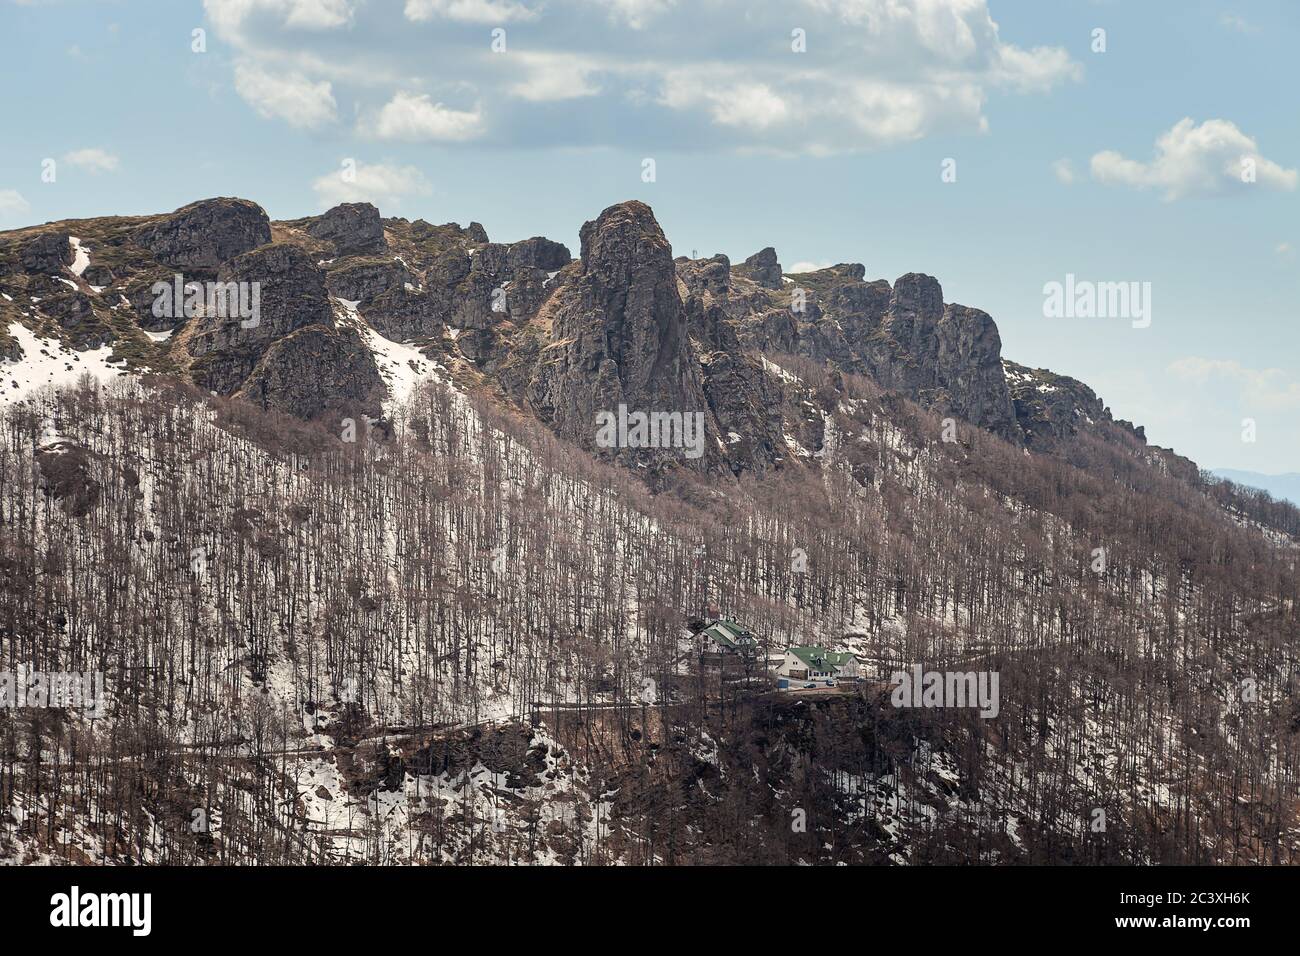 Impressionanti, puntinose, colonne rocciose di montagna, alberi senza foglie, neve rimanente sul terreno e cielo blu con nuvole bianche Foto Stock